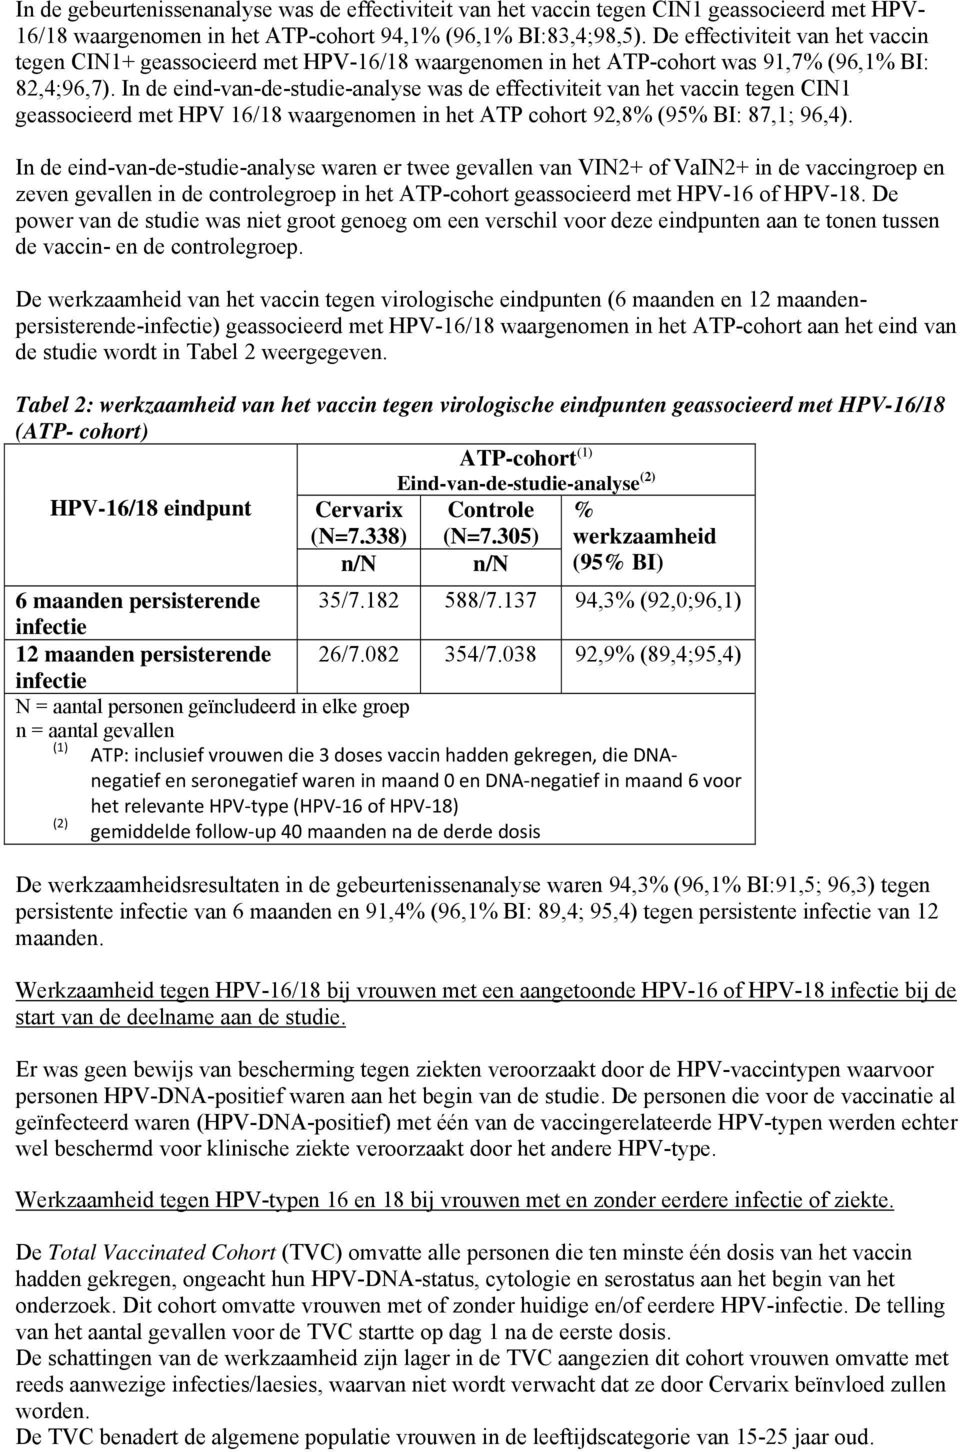 In de eind-van-de-studie-analyse was de effectiviteit van het vaccin tegen CIN1 geassocieerd met HPV 16/18 waargenomen in het ATP cohort 92,8% (95% BI: 87,1; 96,4).